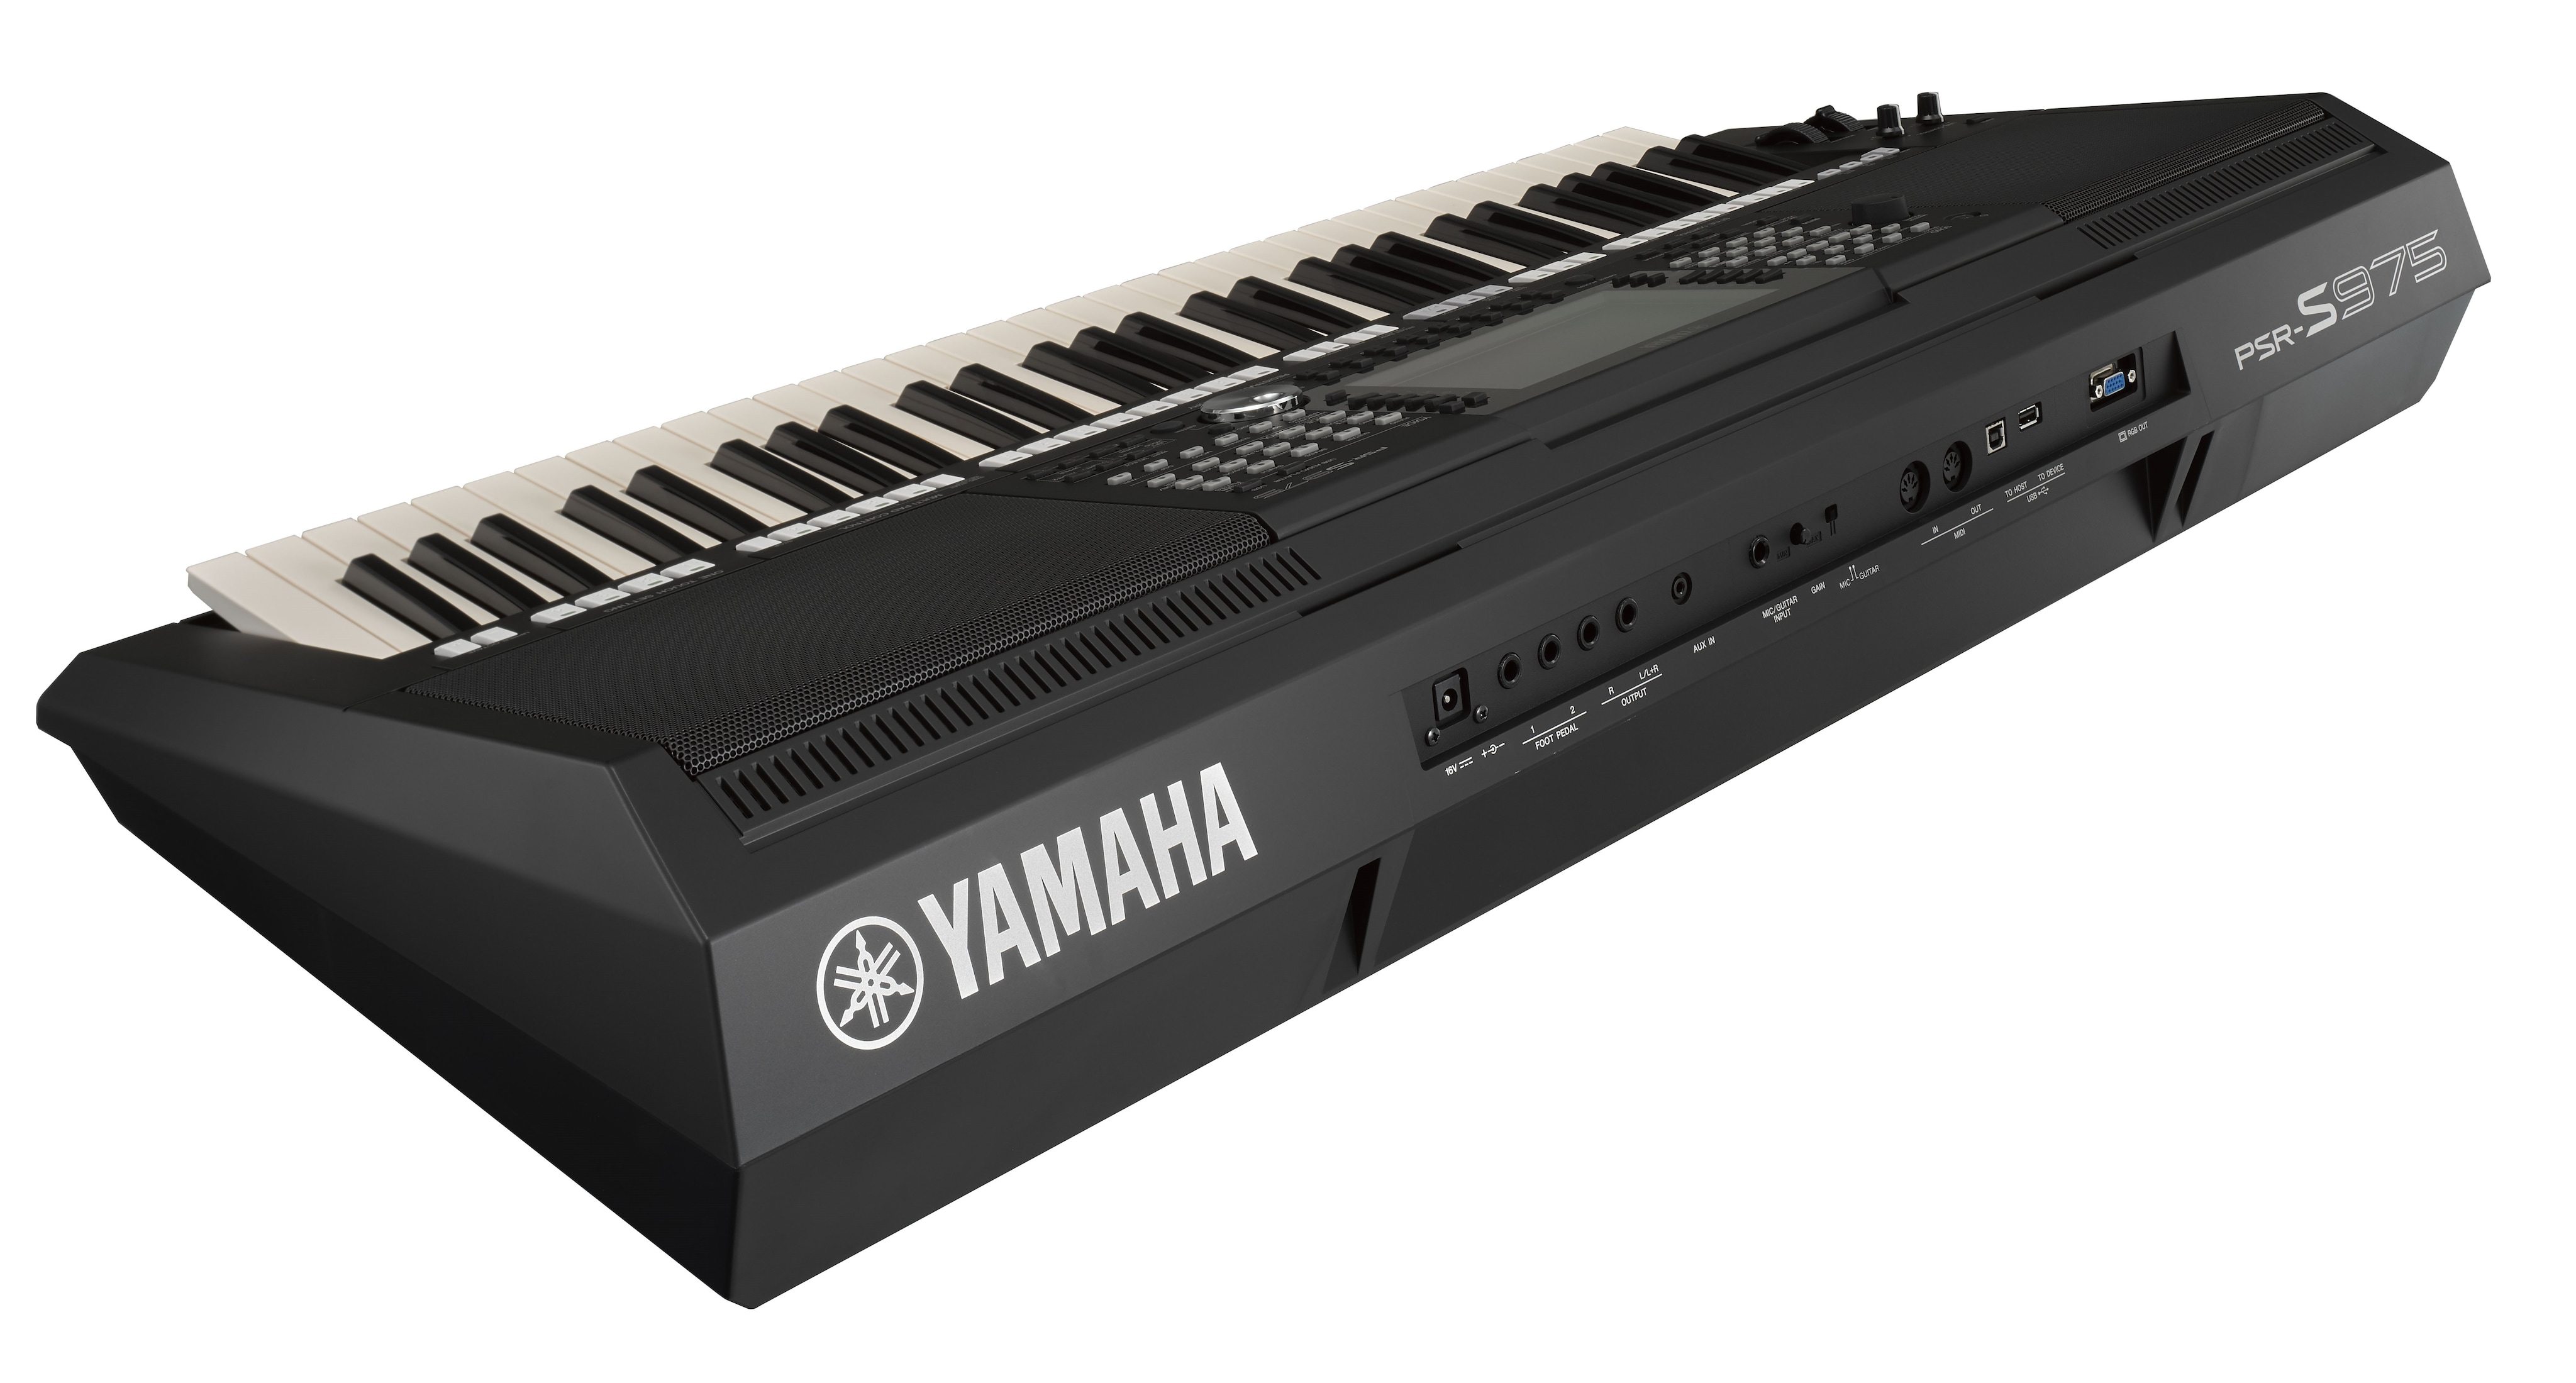 Svække Bemærk venligst Sinewi PSR-S975 - Downloads - Digital and Arranger Workstations - Keyboard  Instruments - Musical Instruments - Products - Yamaha USA